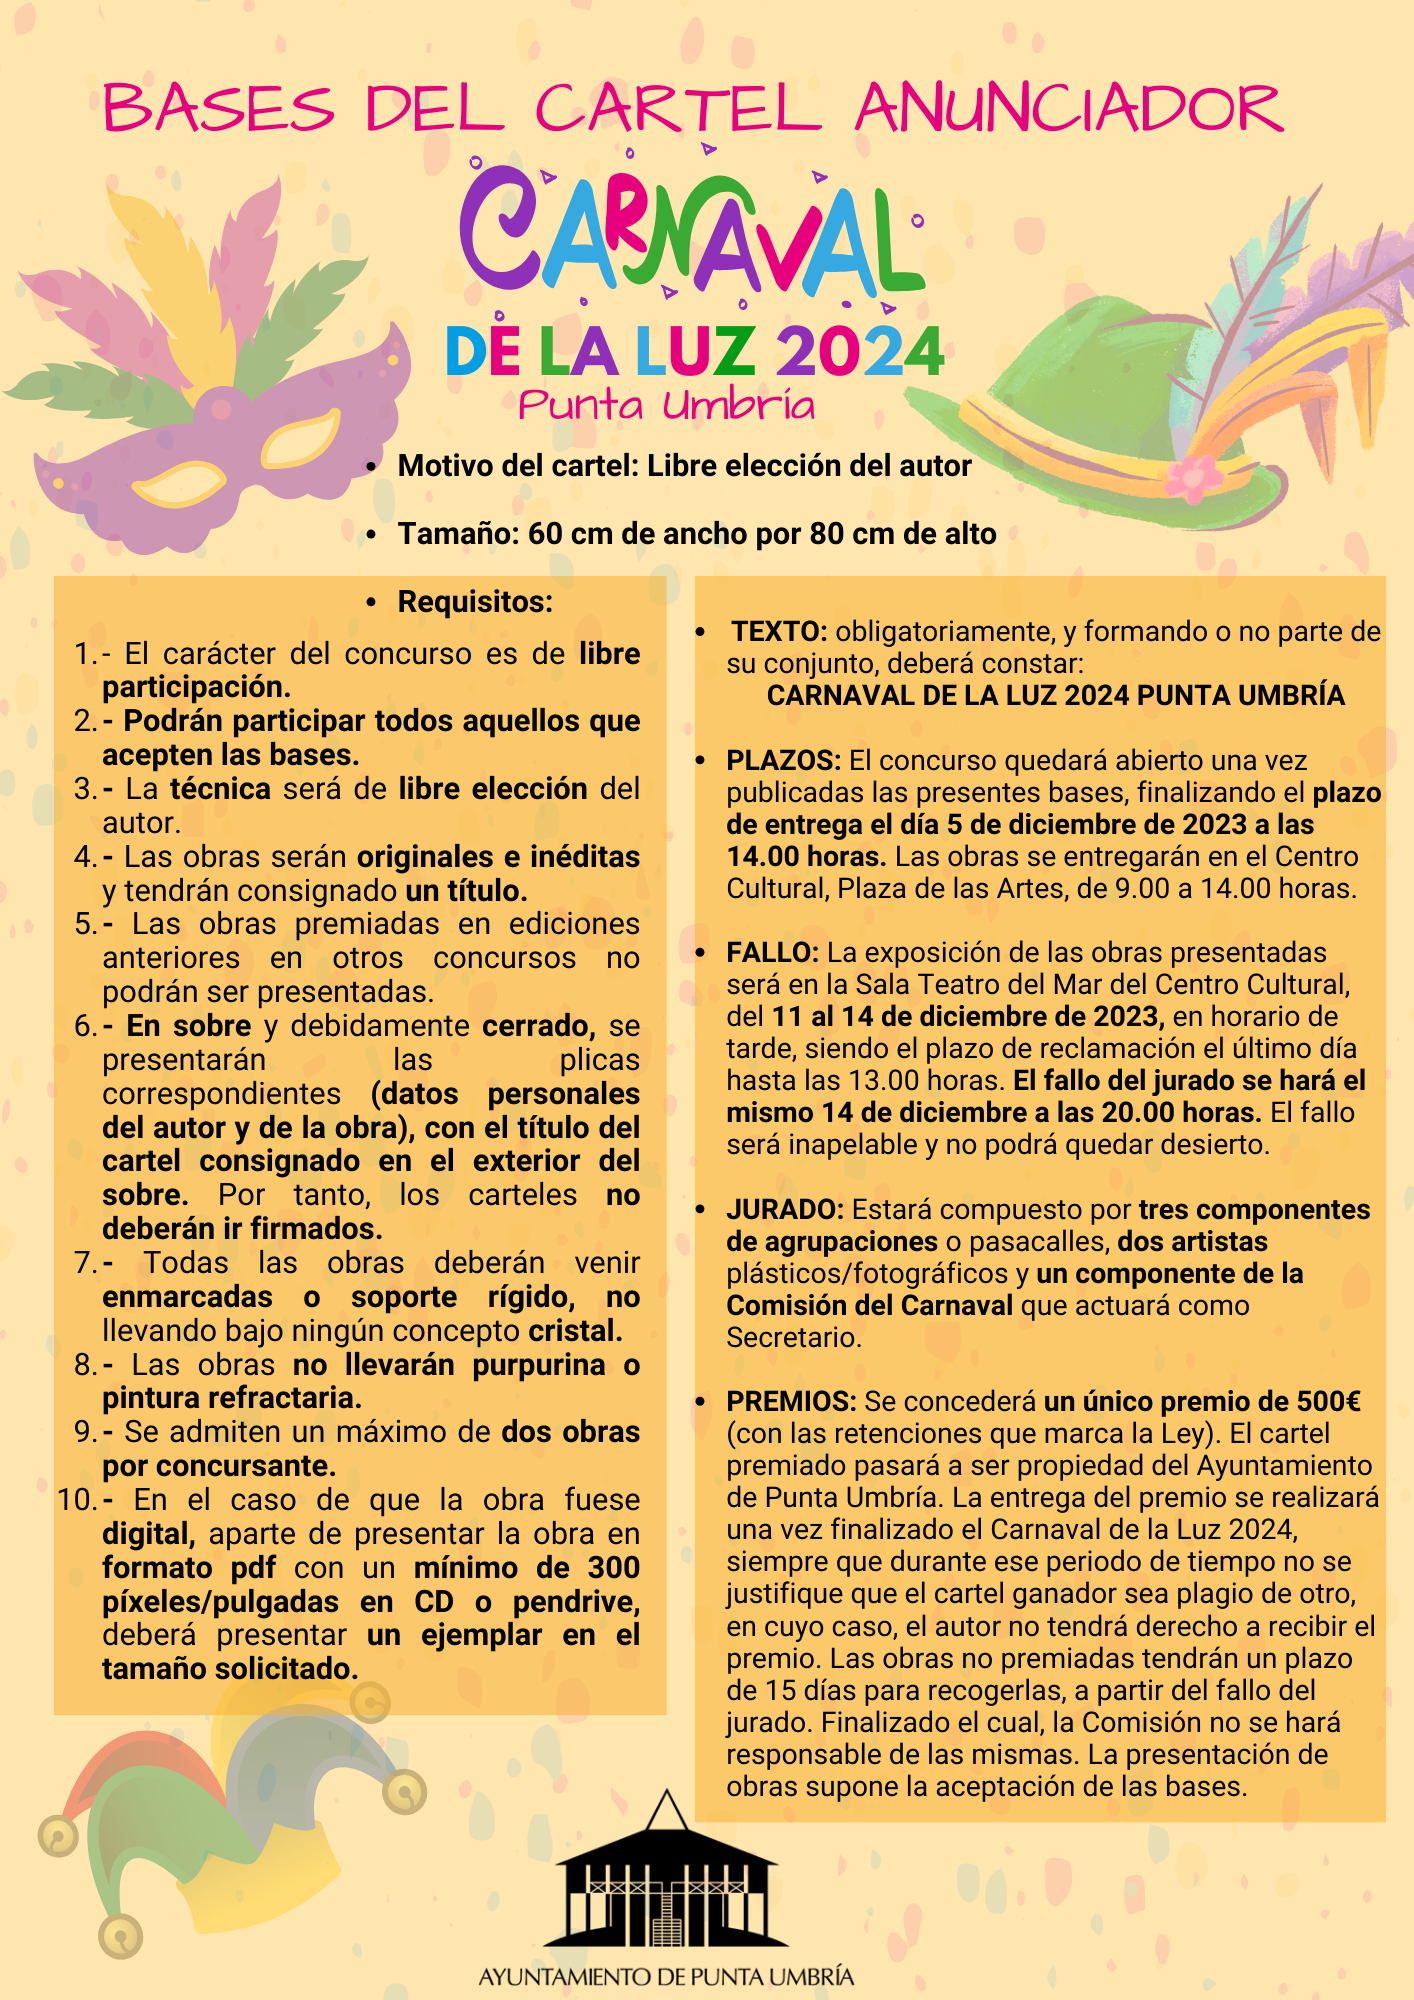 El Ayuntamiento de Punta Umbría publica las bases del cartel anunciador del Carnaval de la Luz 2024